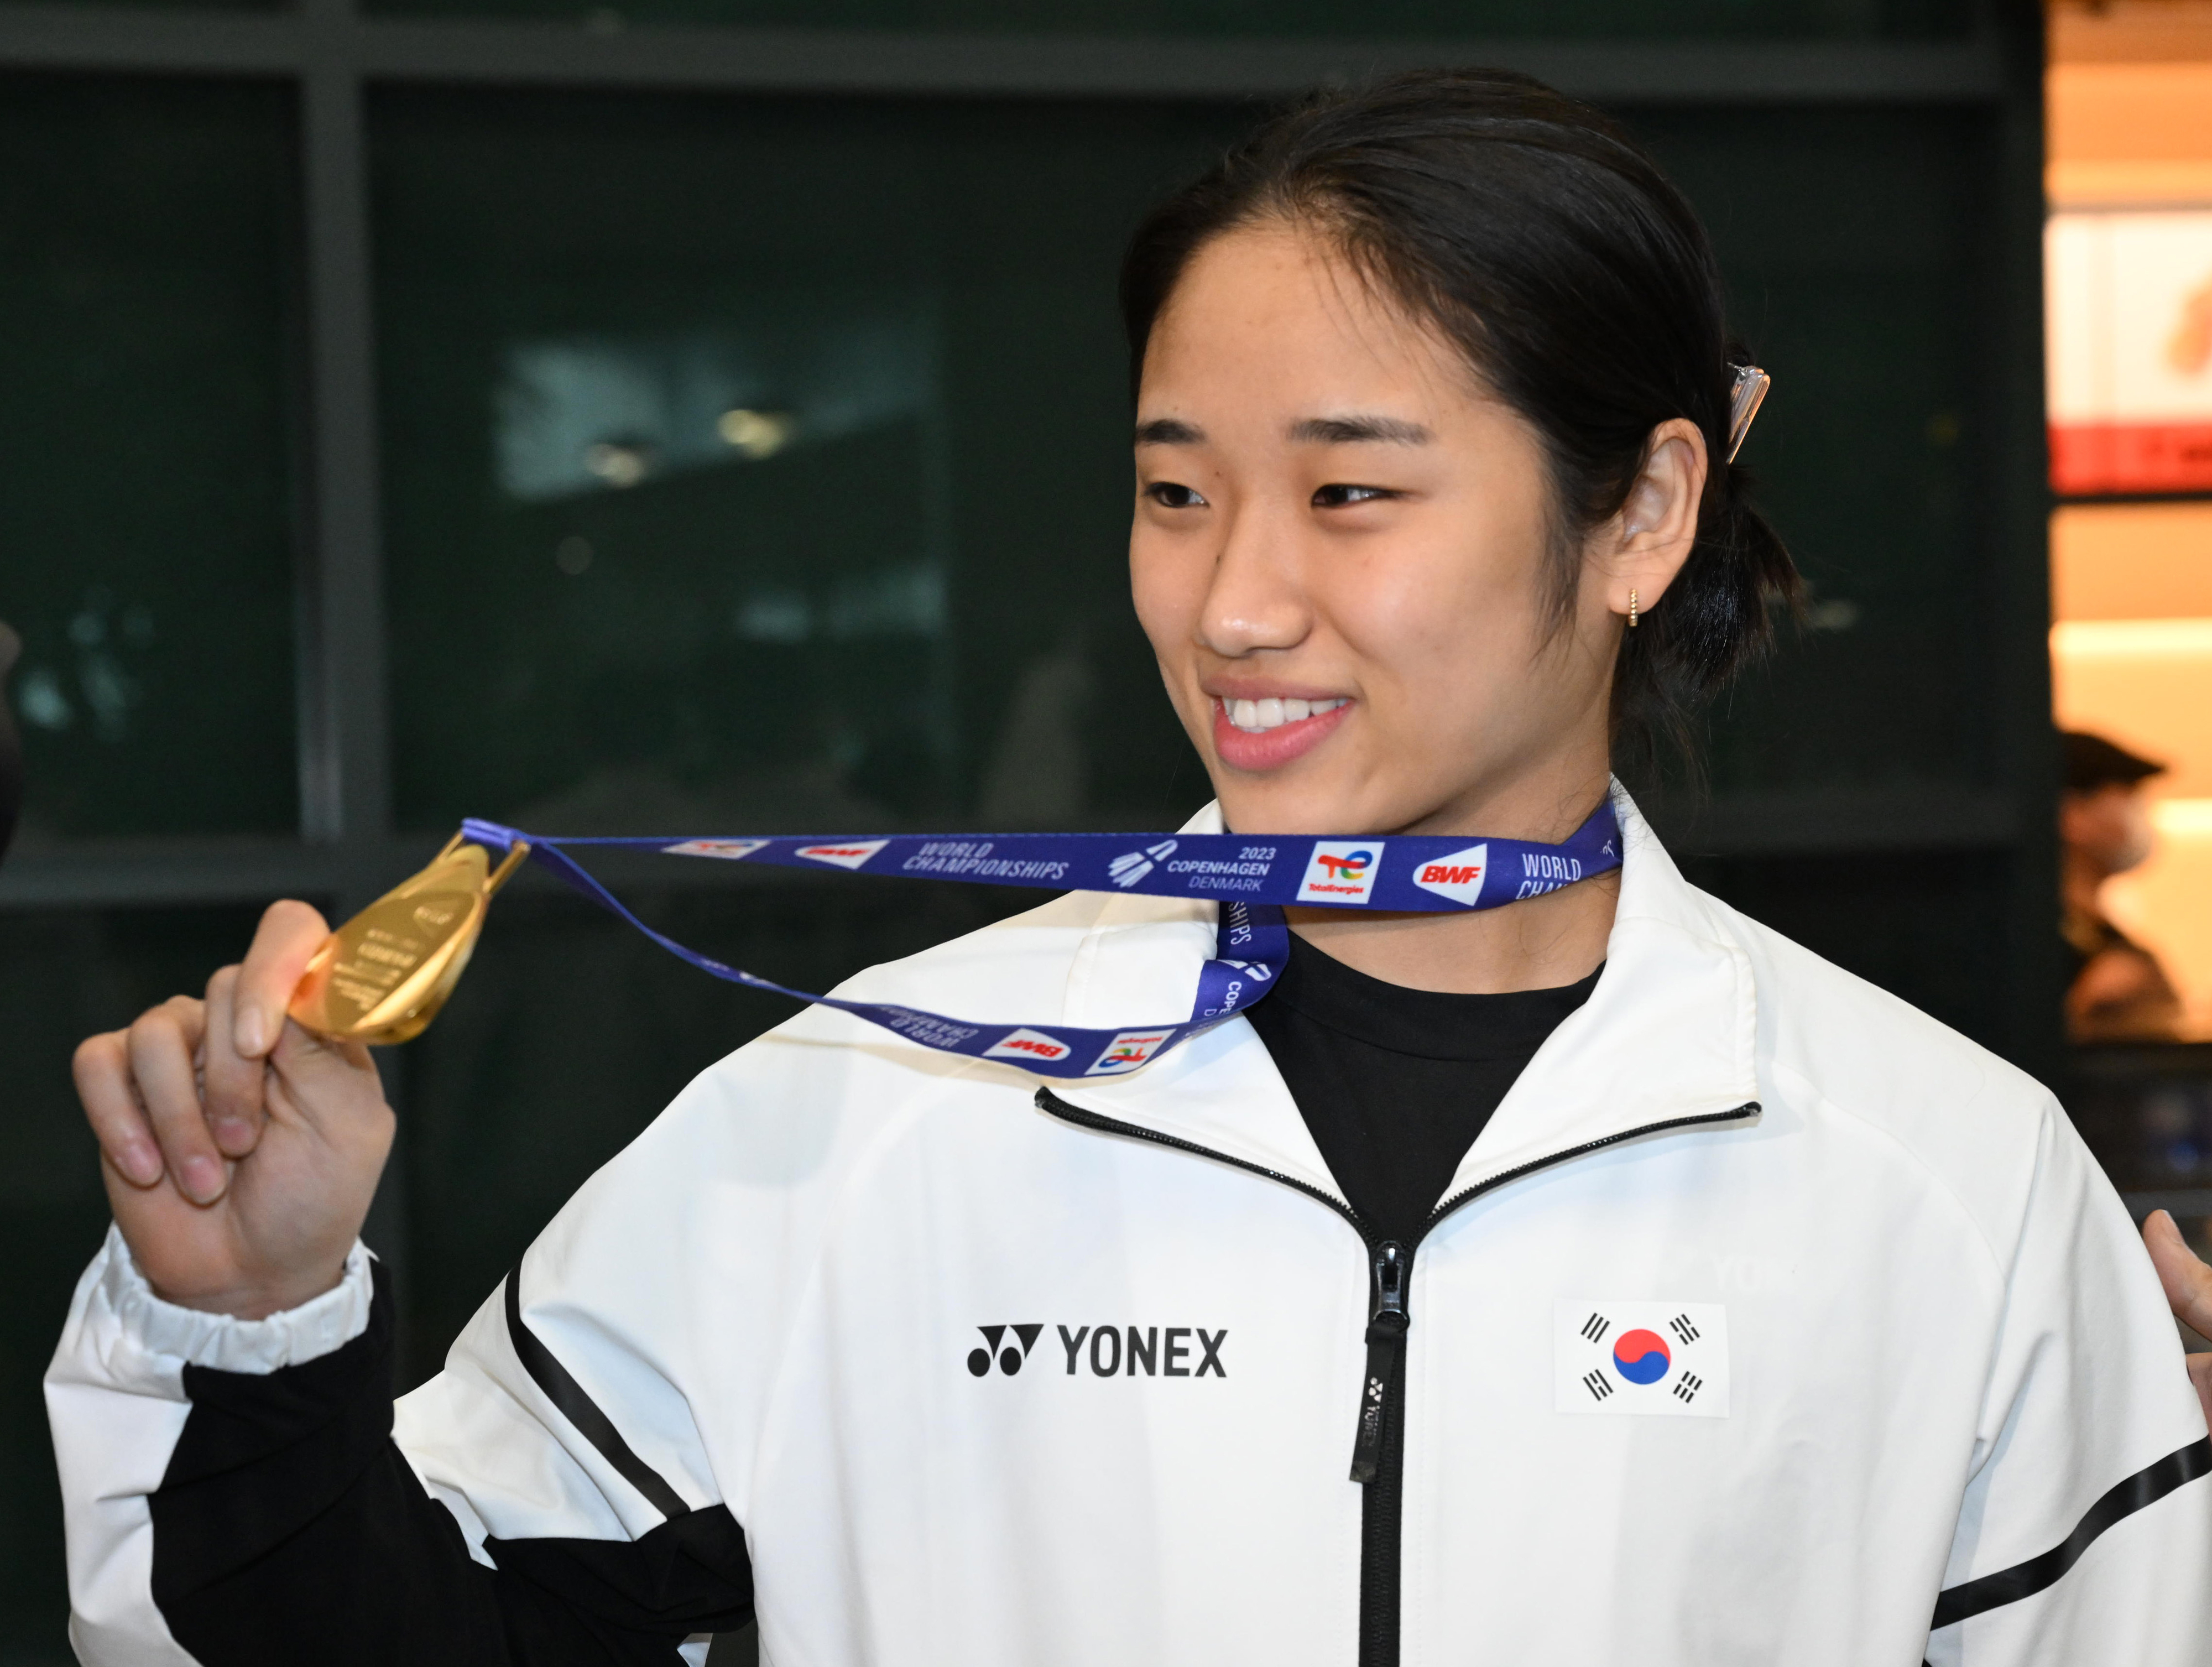 2023 세계배드민턴연맹(BWF) 세계개인선수권대회 여자 단식 결승전에서 금메달을 딴 안세영(21·삼성생명)선수가 29일 오전 인천국제공항에서 금메달을 들어 보이고 있다.